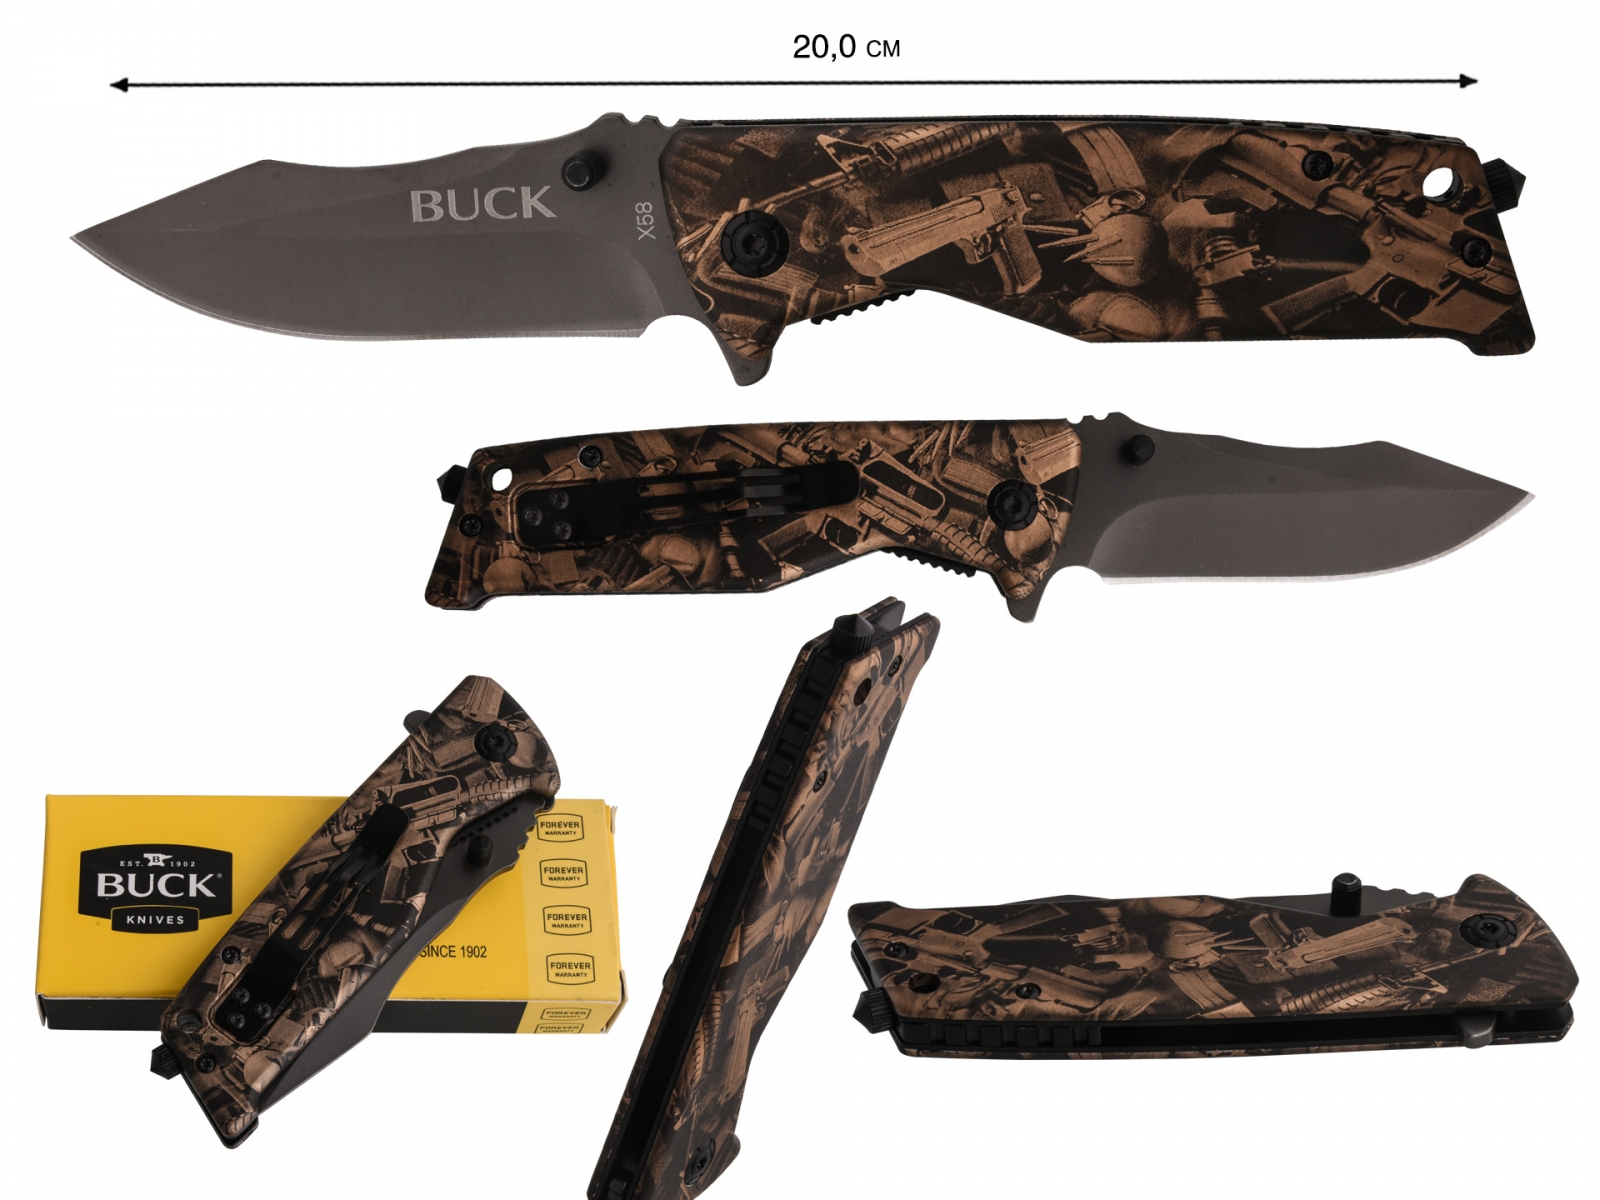 Заказать тактический нож Buck X58 по лучшей цене с доставкой